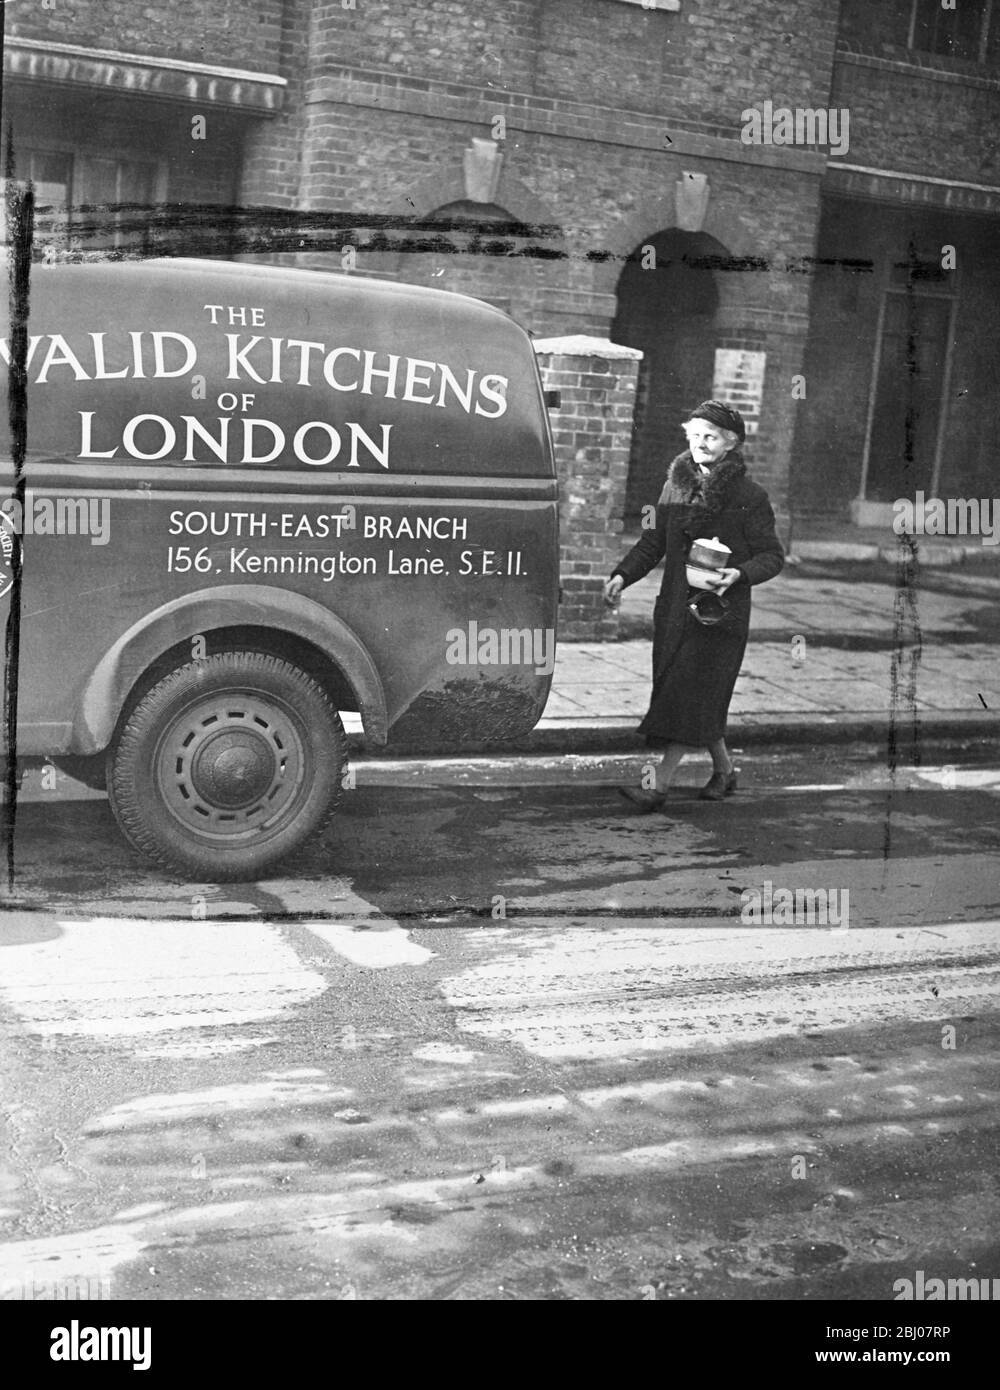 Alimentare l'inferme durante il blitz di ghiaccio. - le cucine invalide di Londra, sono state tenute occupate durante il recente 'congelatore', che consegna cene a persone inferme. Gestito da contributi volontari, le cucine offrono una media di 60 cene al giorno agli invalidi londinesi incapaci di lasciare le loro case. - spettacoli fotografici, signora Ewins al lavoro a Londra, consegna lattine di cibo in una casa di un invalido. - 26 febbraio 1947 Foto Stock